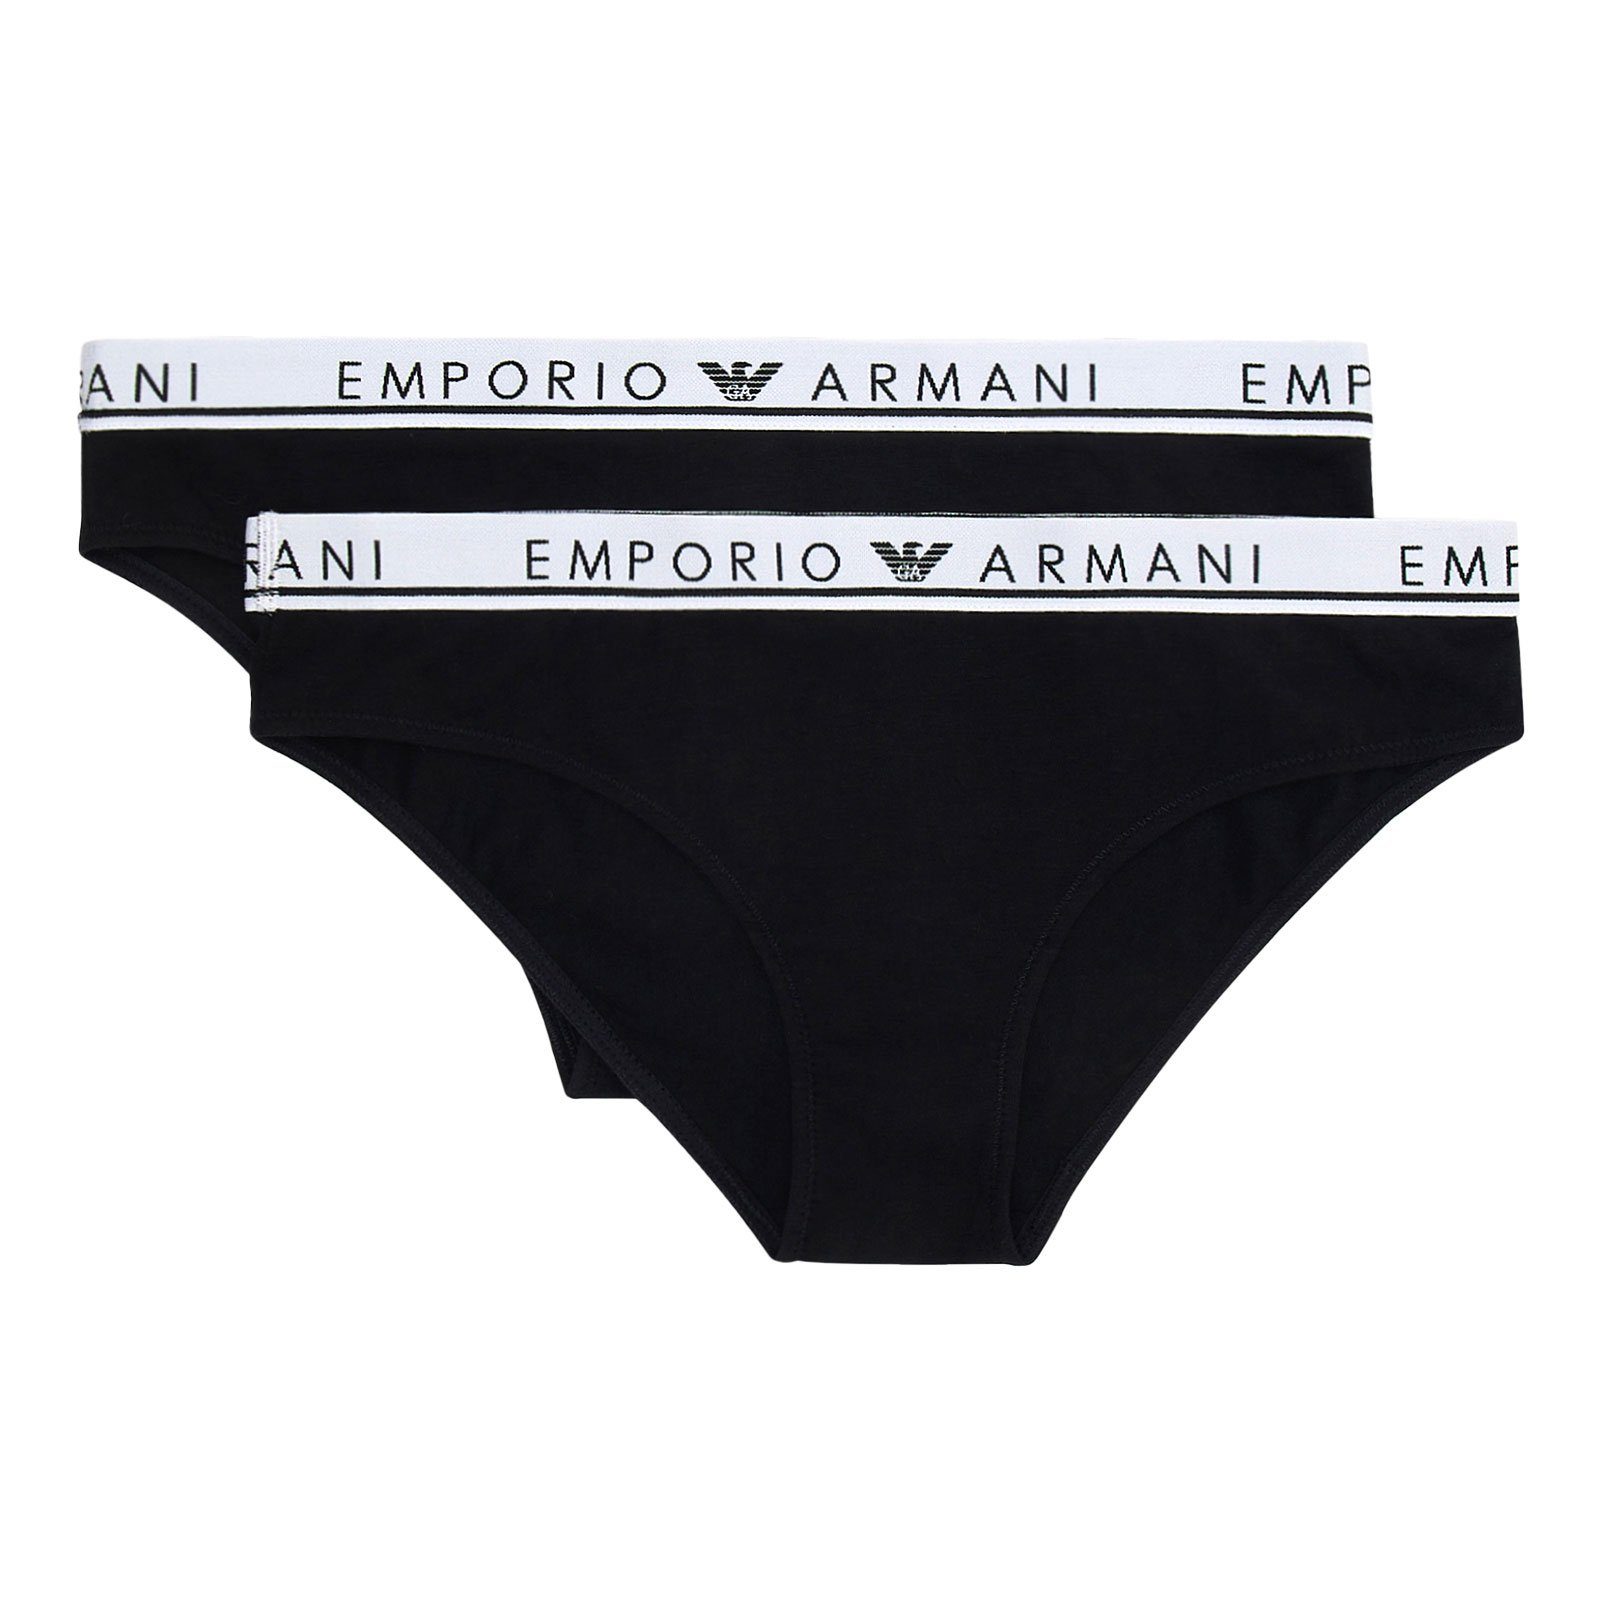 Emporio Armani Slip Brief Stretch Cotton (2-St., enthält 2 gleichfarbige Слипы) mit umlaufenden Markenschriftzügen